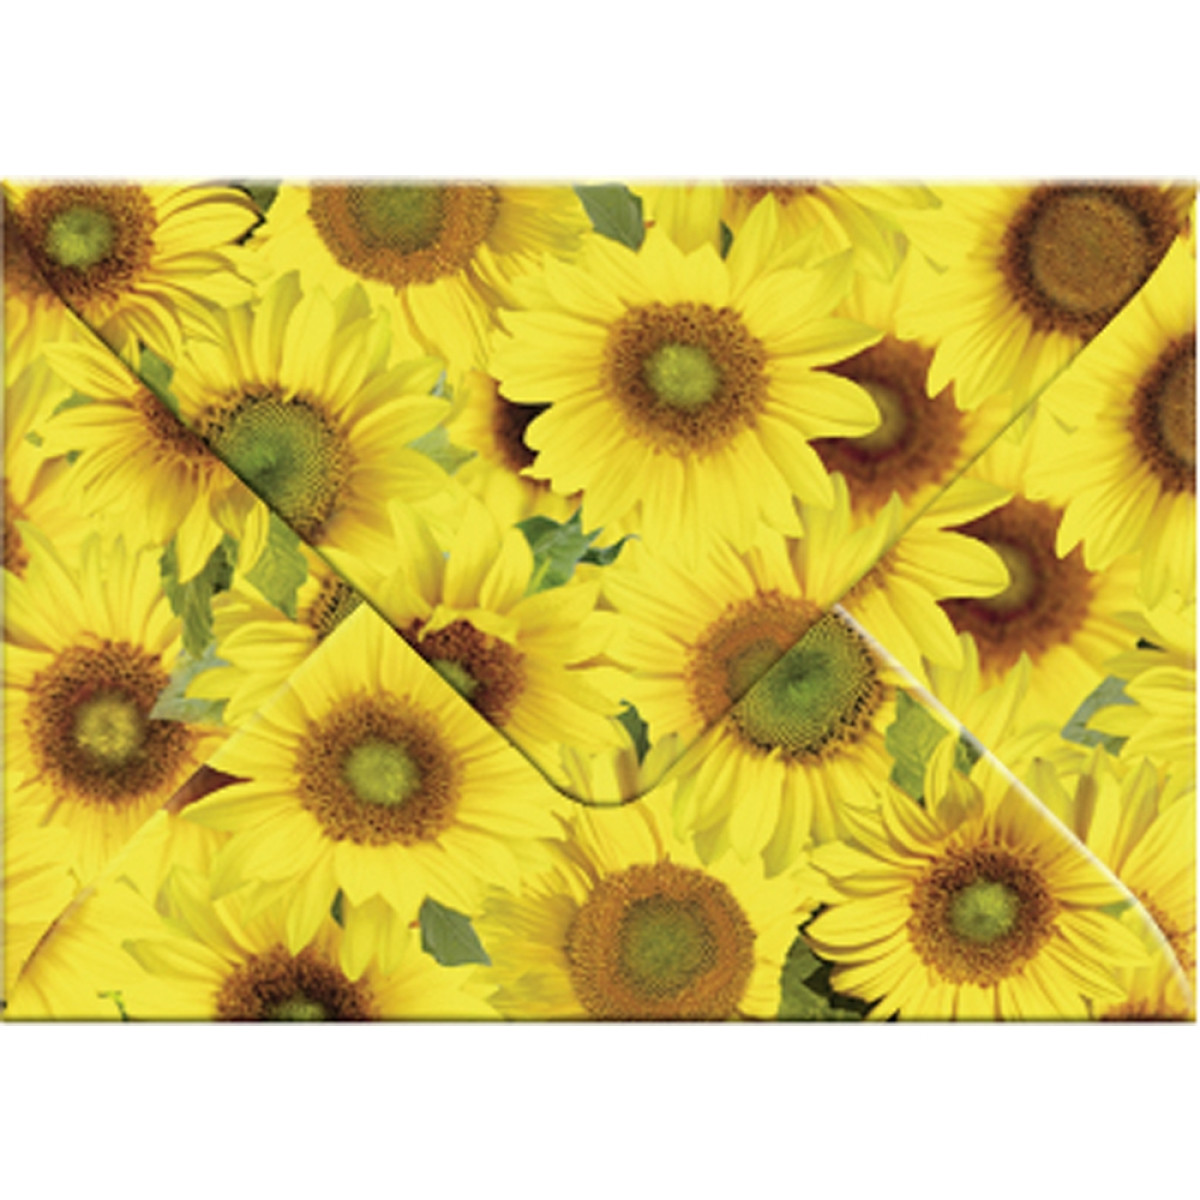 Transparentpapier-Kuverts "Flora" 115 g/qm Sonnenblumen - 5 Stück